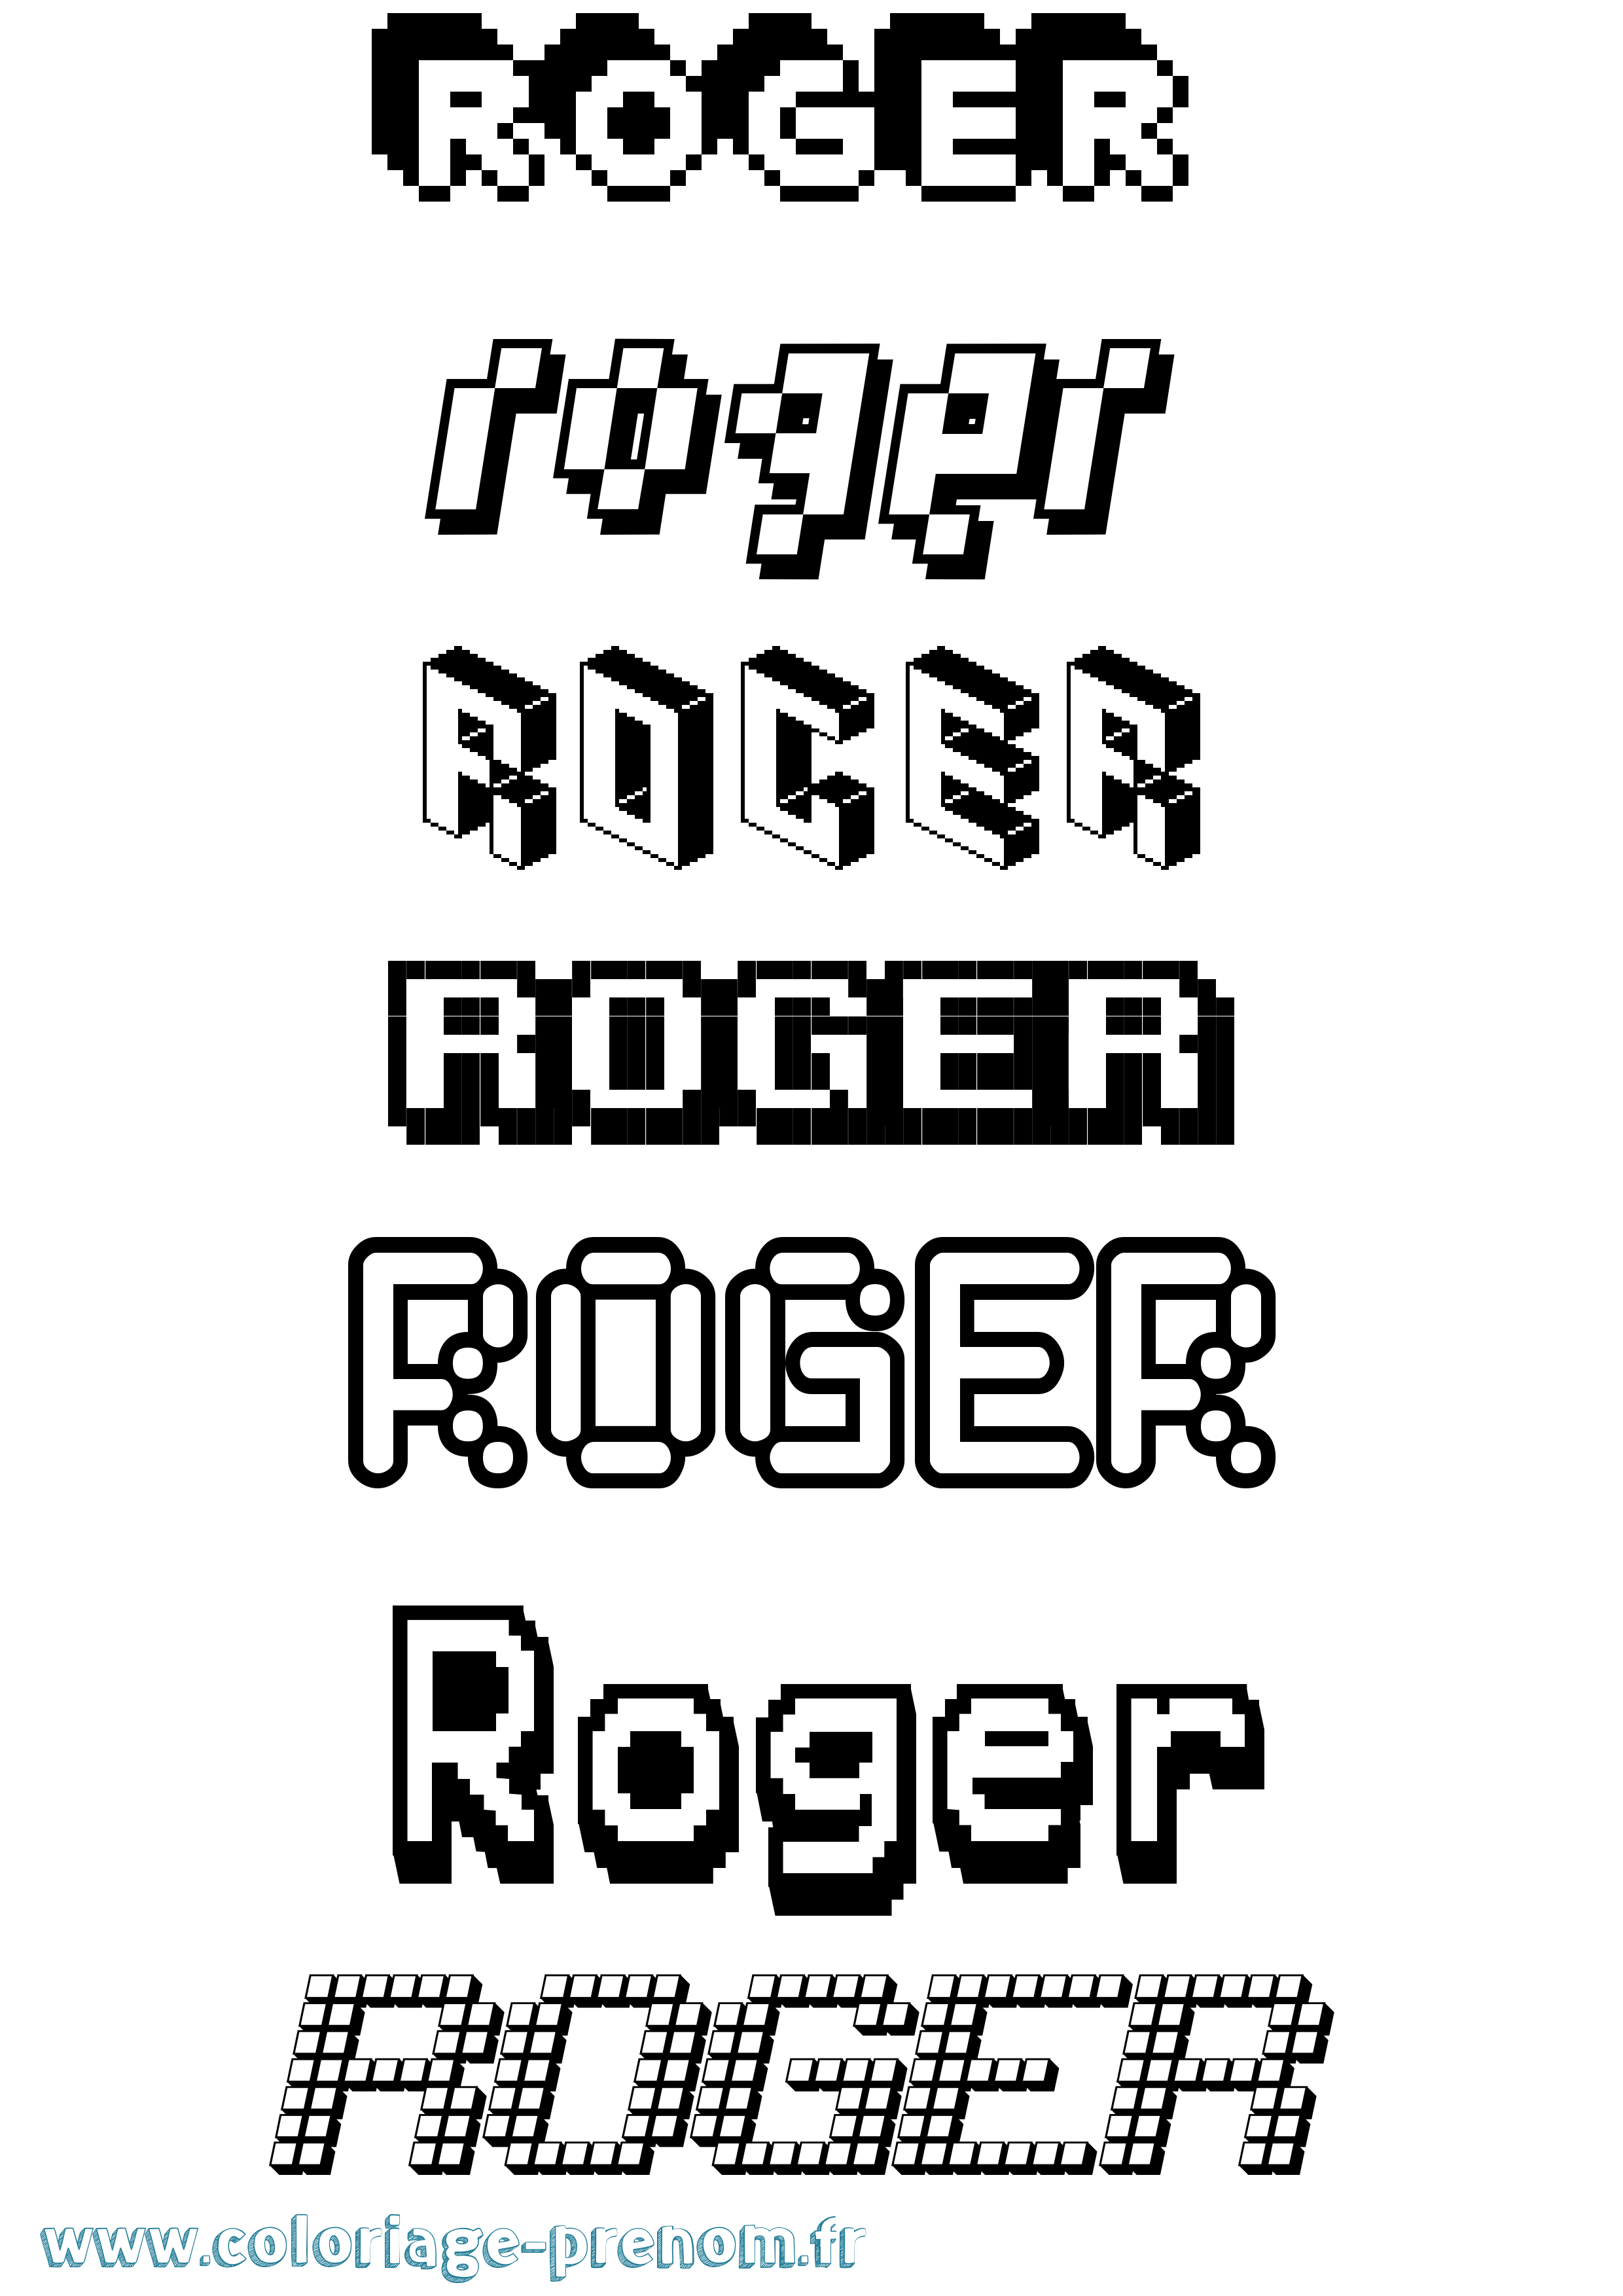 Coloriage prénom Roger